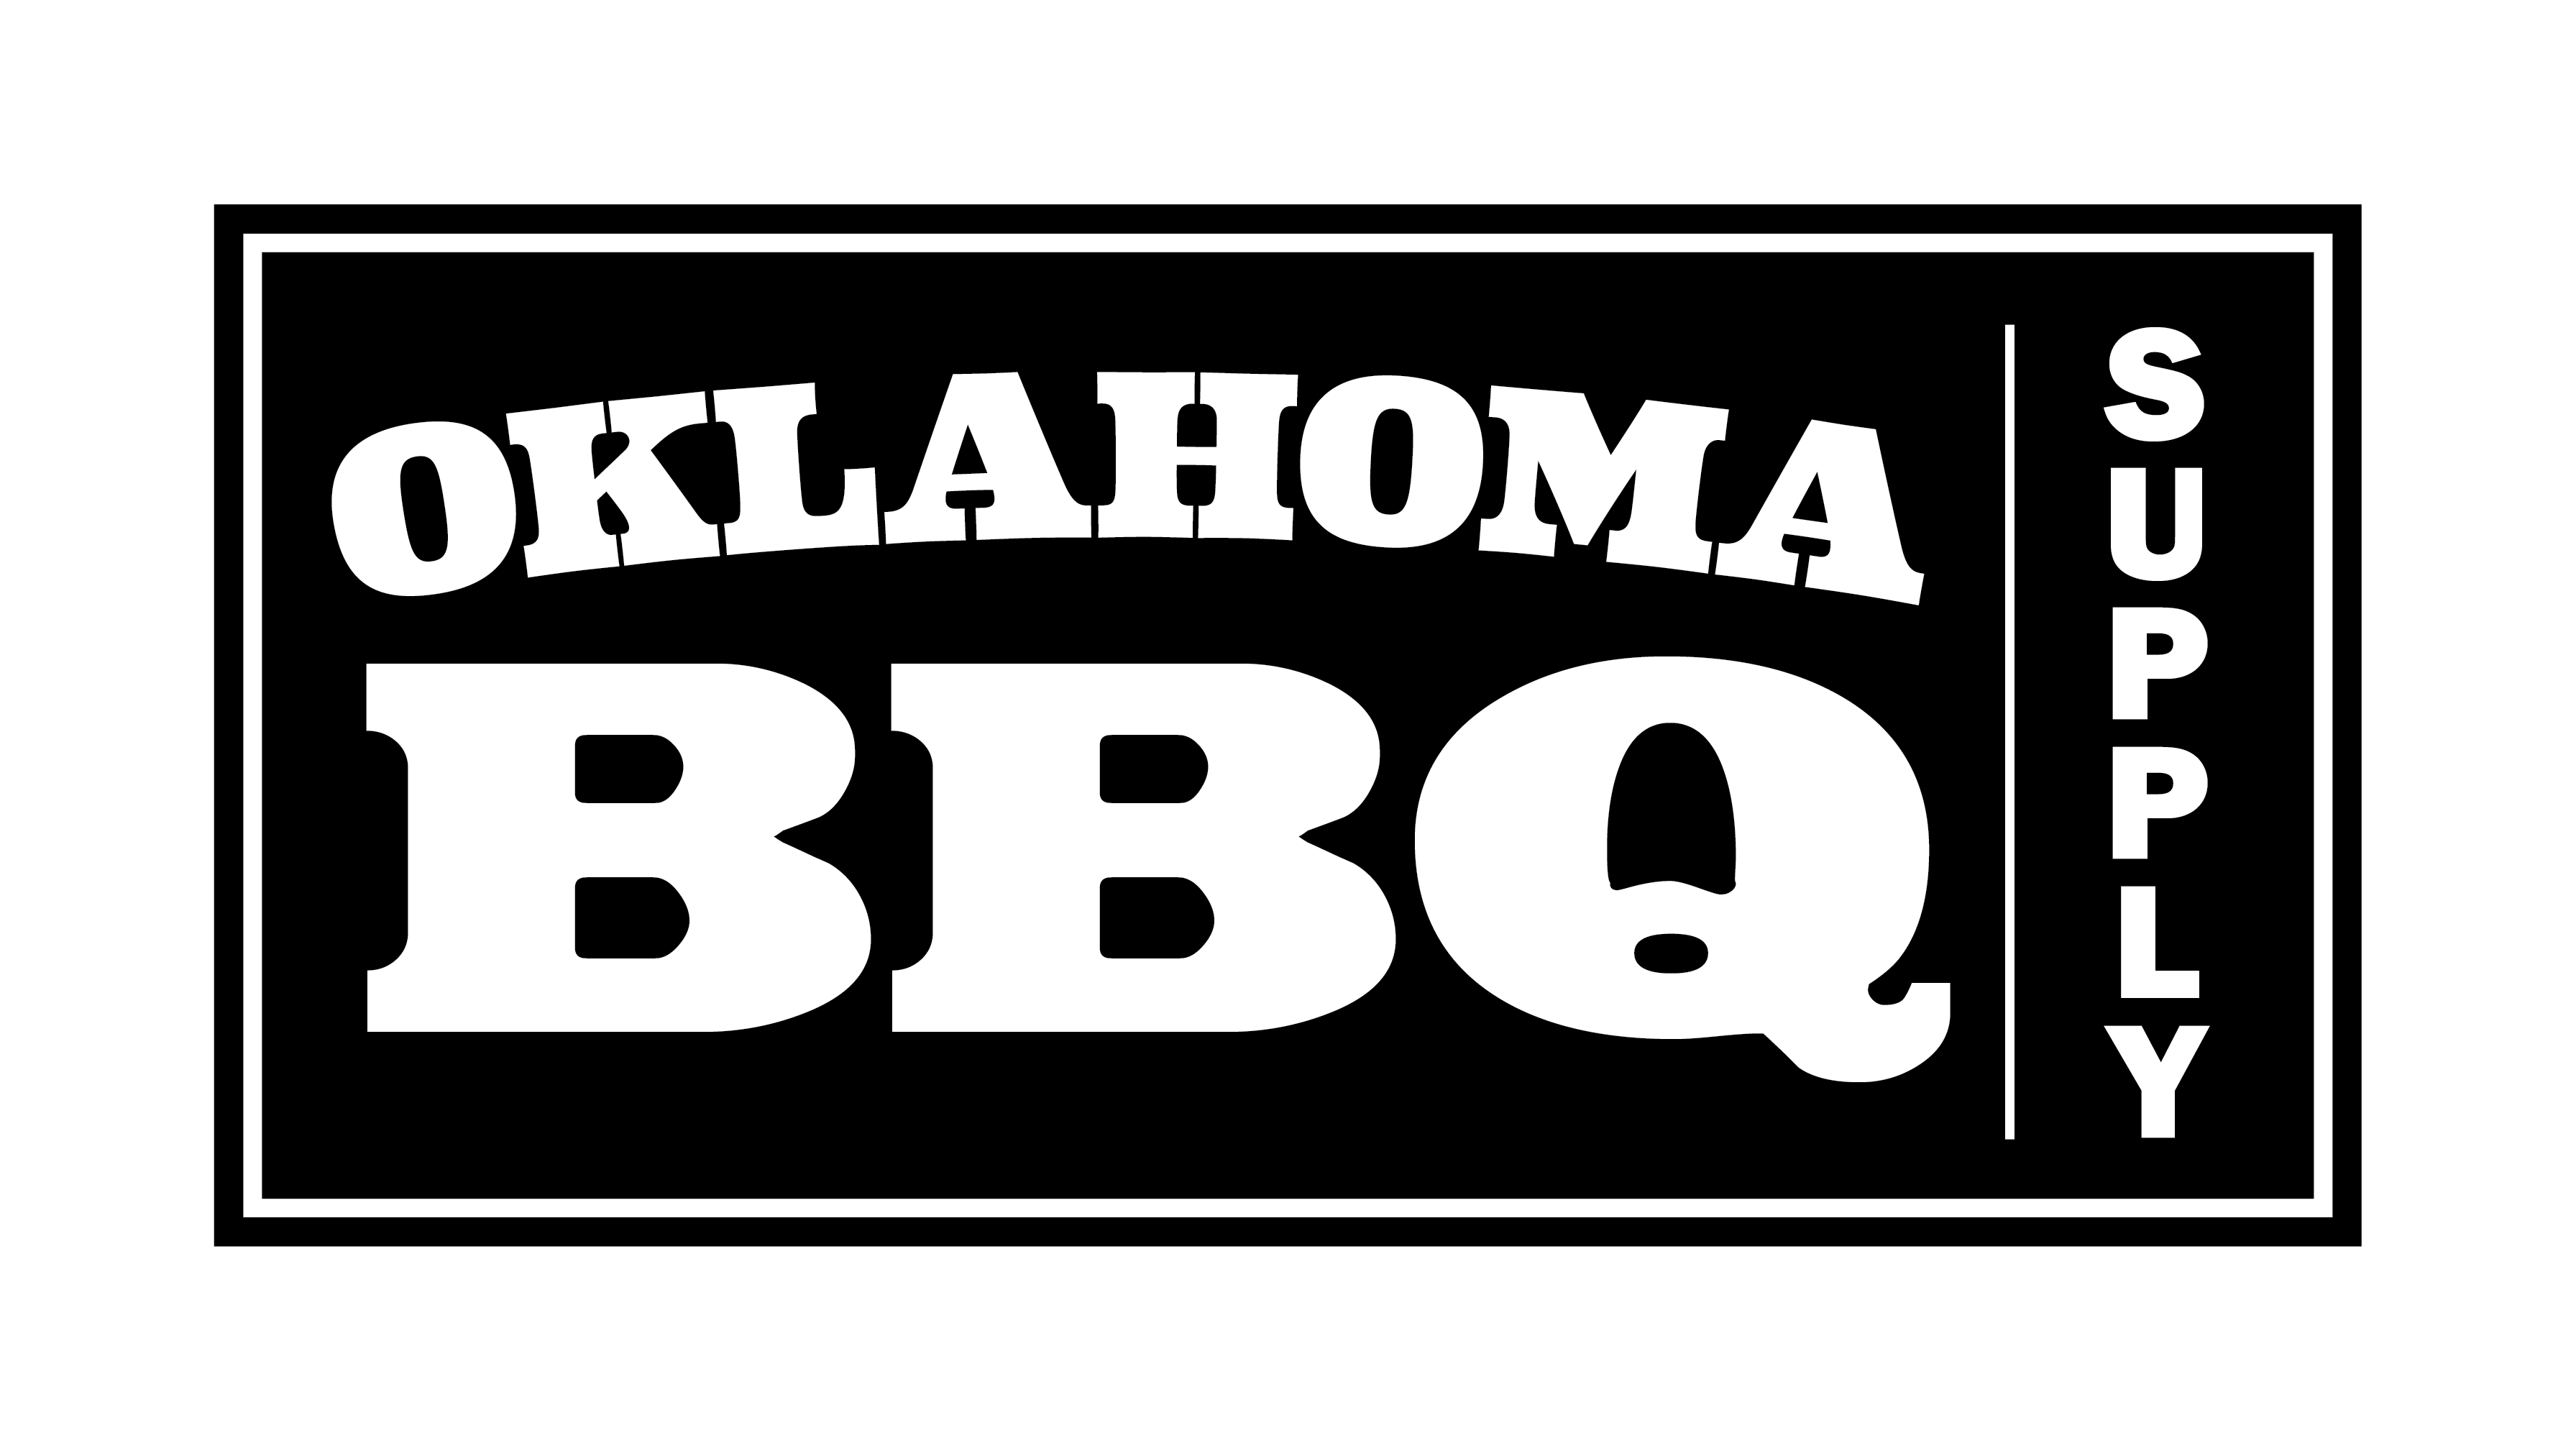 Oklahoma Joe's Blacksmith Meat Shears